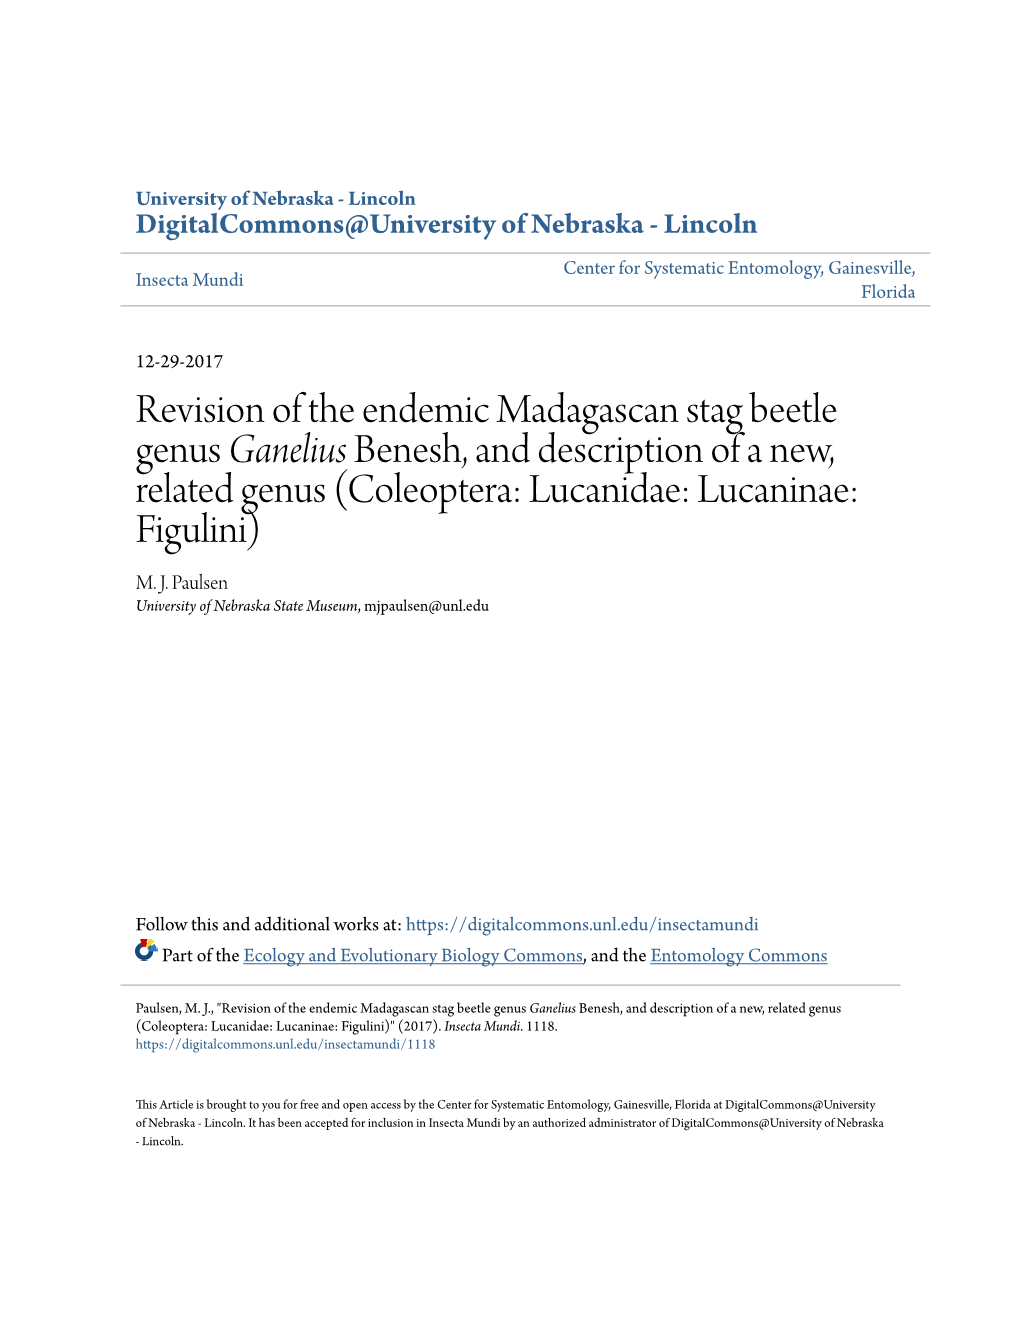 Revision of the Endemic Madagascan Stag Beetle Genus &lt;I&gt;Ganelius&lt;/I